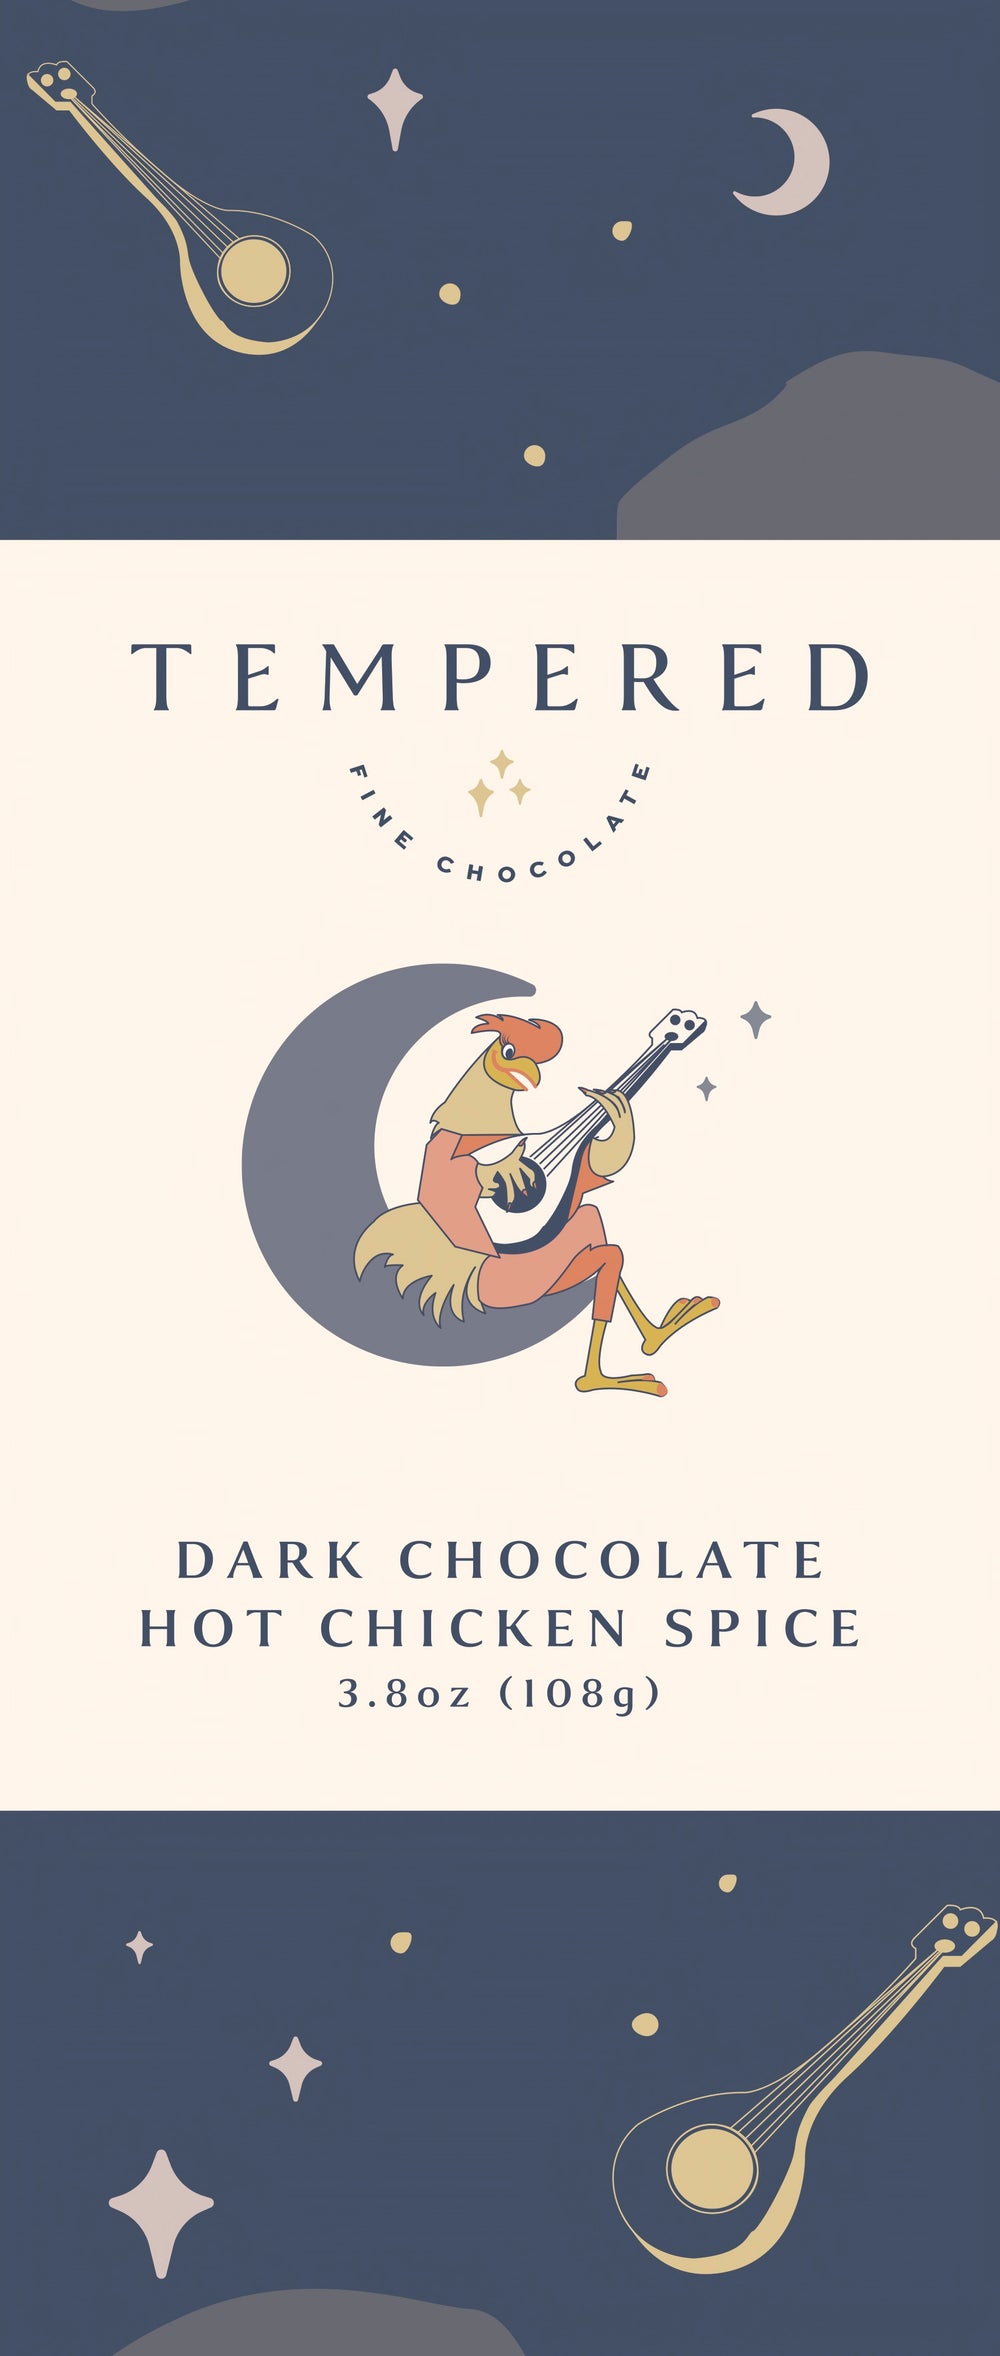 Dark Chocolate Hot Chicken Spice Bar